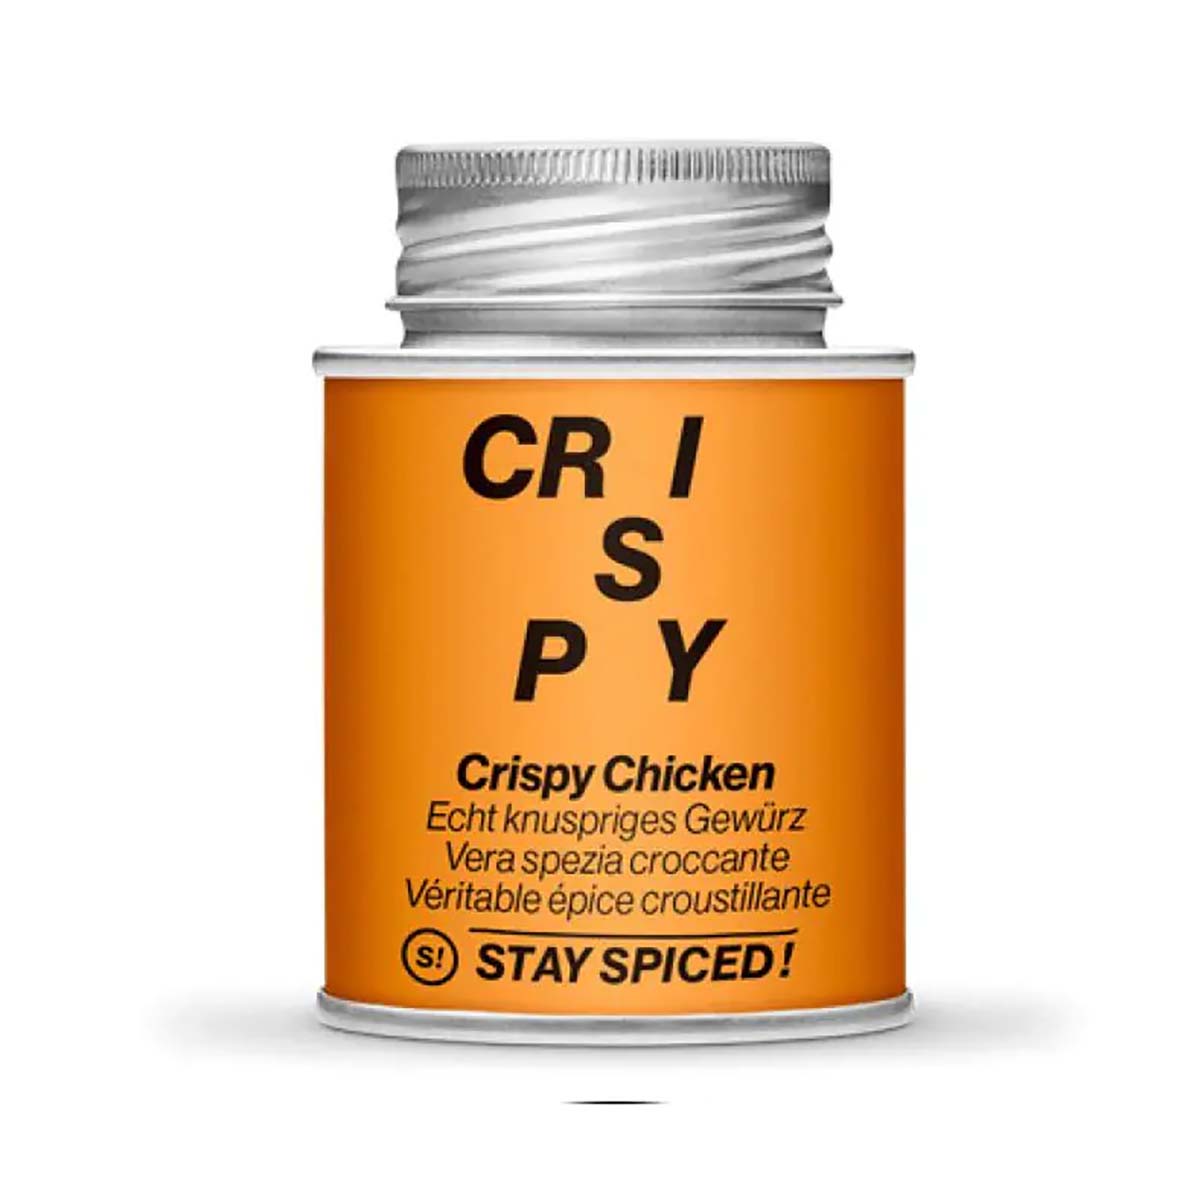 STAY SPICED ! Crispy Chicken - Echt knuspriges Gewürz | 80 g